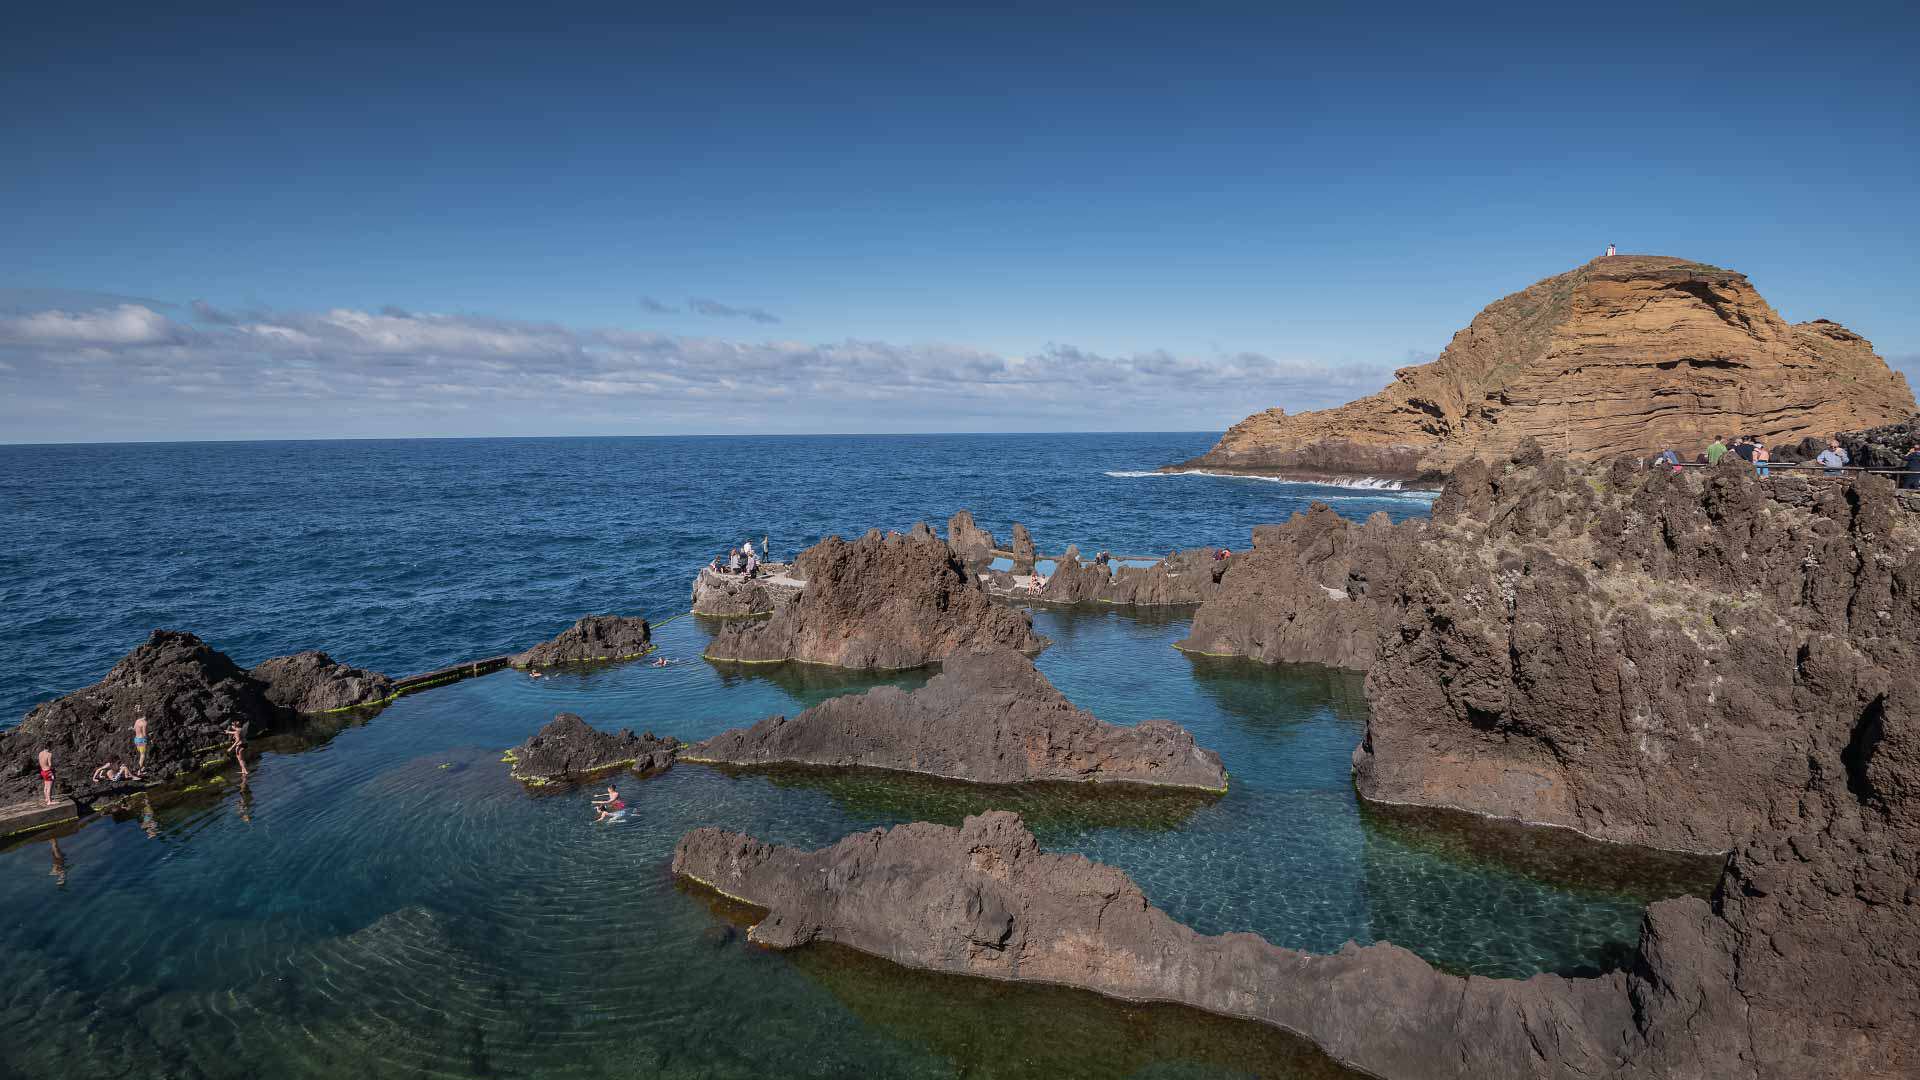 11 Melhores Locais Para Nadar Na Natureza Na Madeira